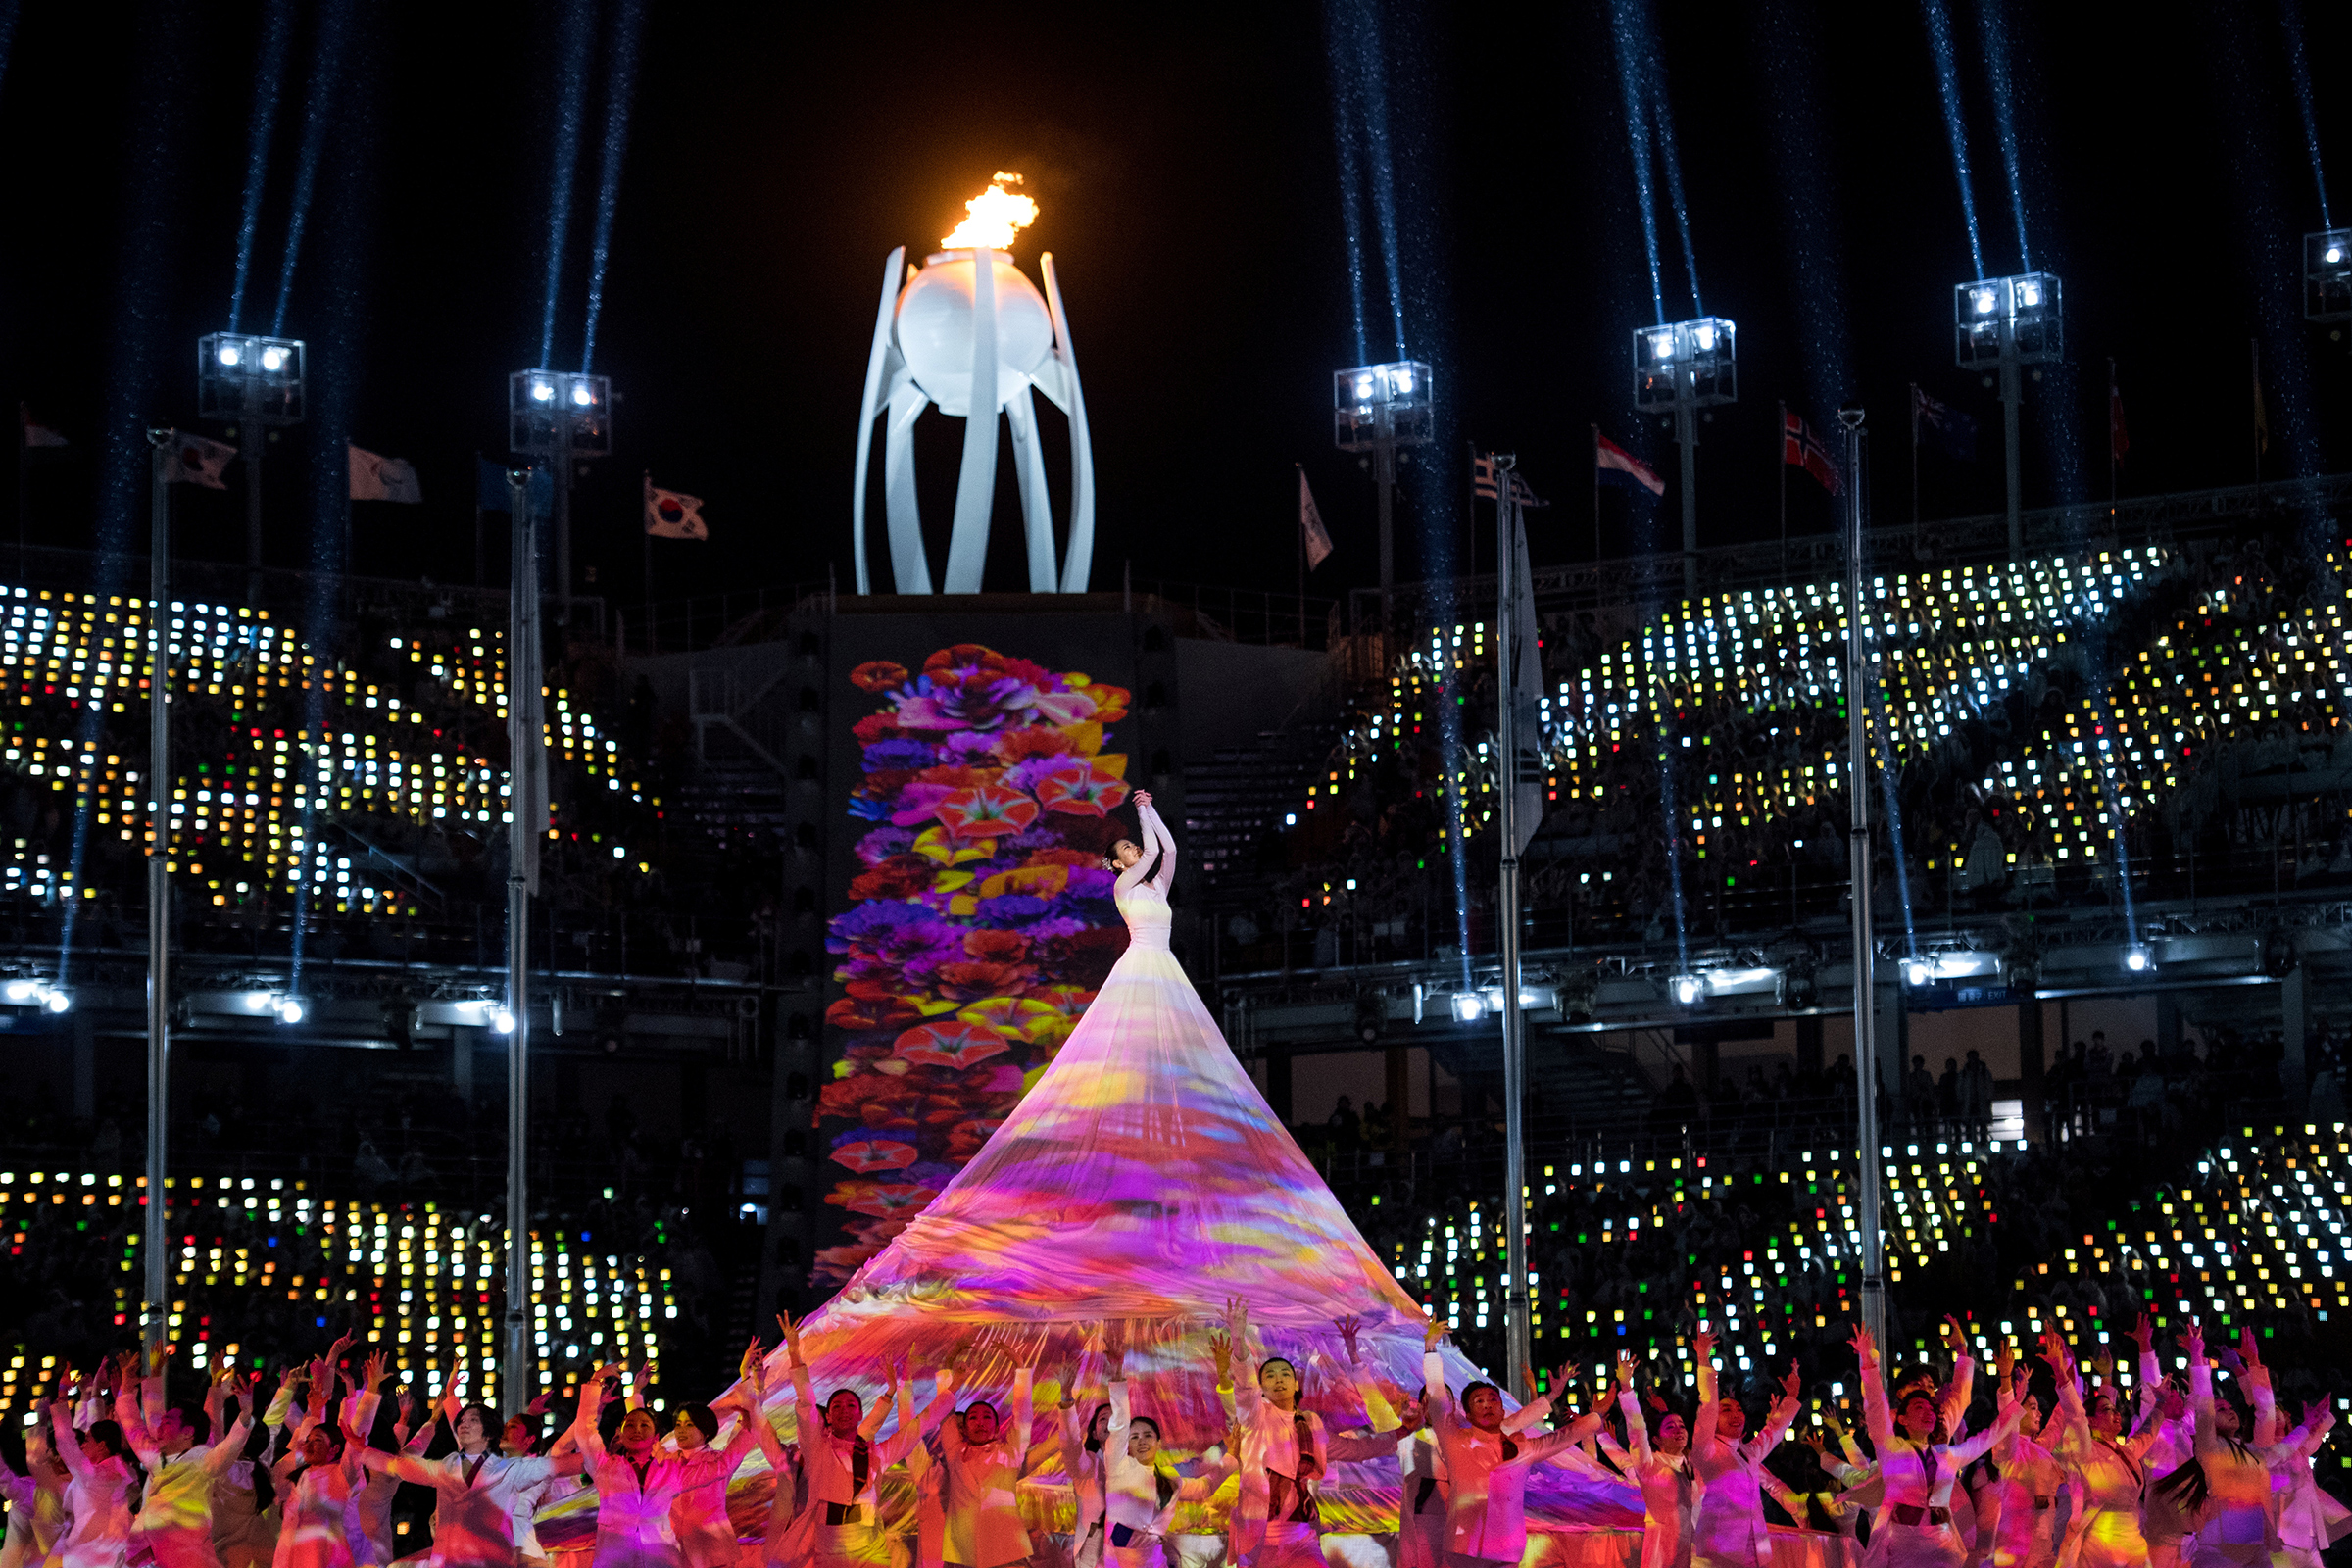 Торжественная церемония закрытия проходила на стадионе Pyeongchang Olympic Stadium в городе Пхёнчхан.